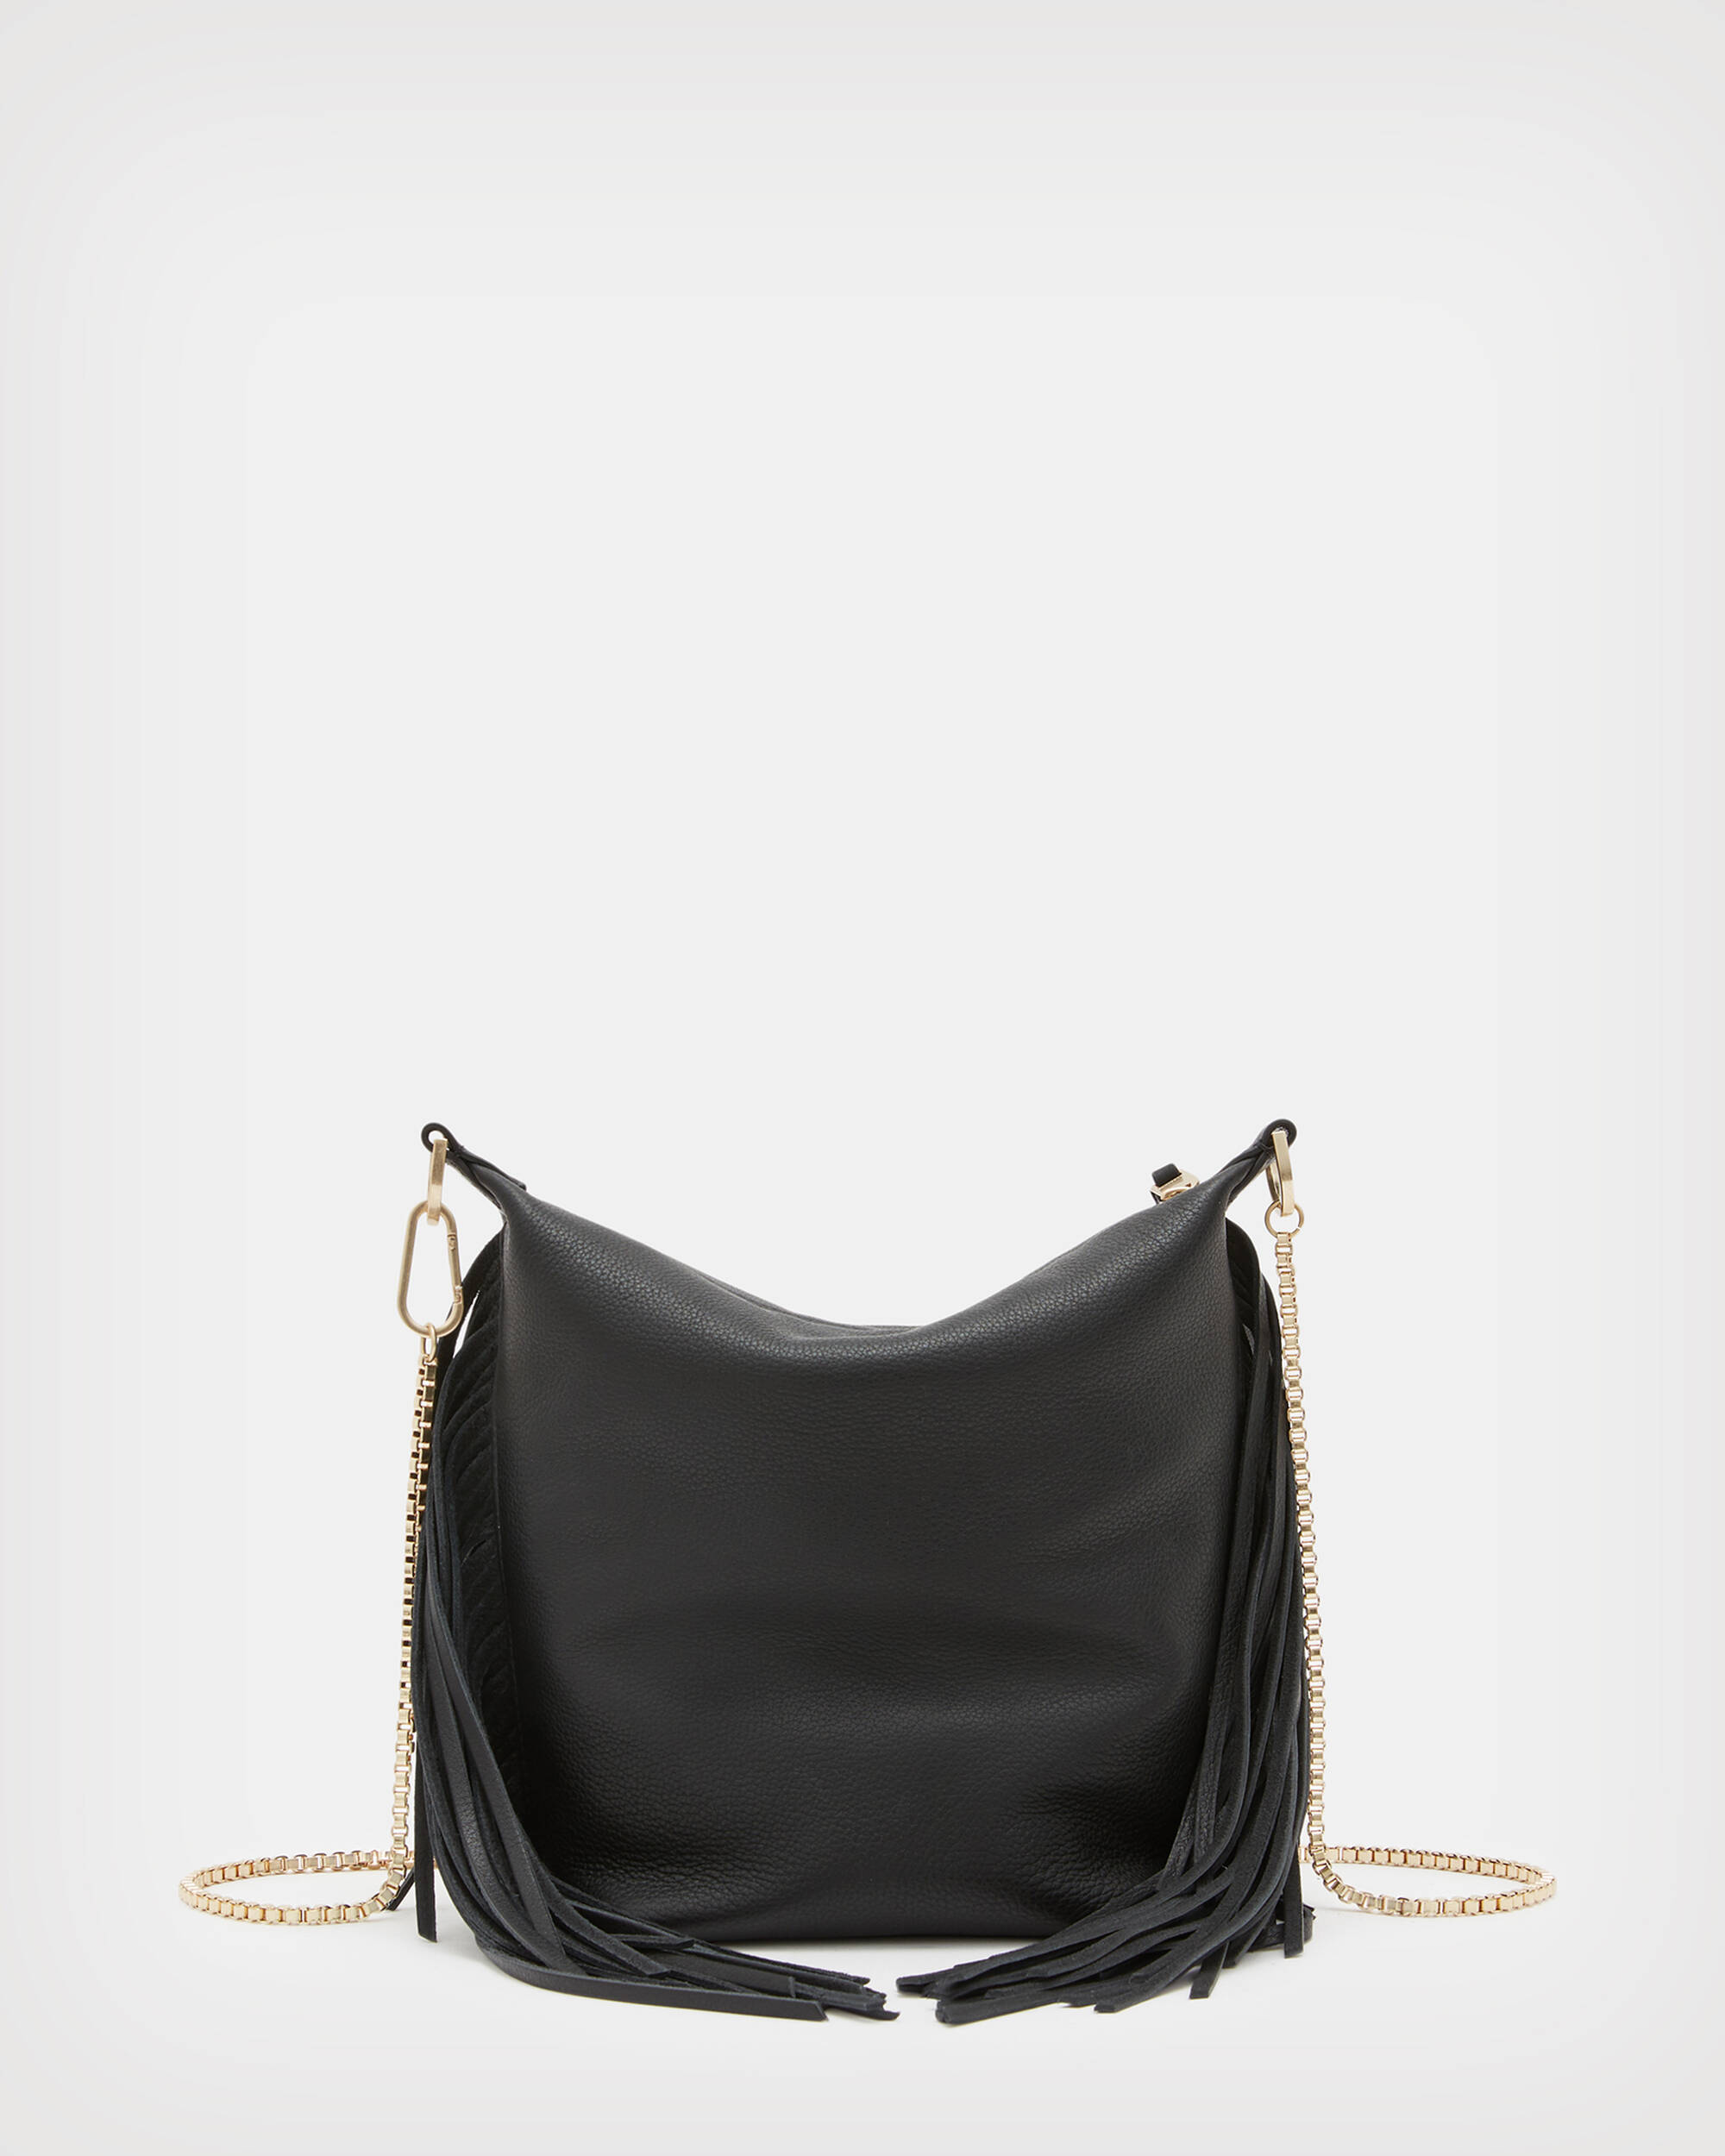 Evaline Fringe Crossbody Leather Bag Black | ALLSAINTS US